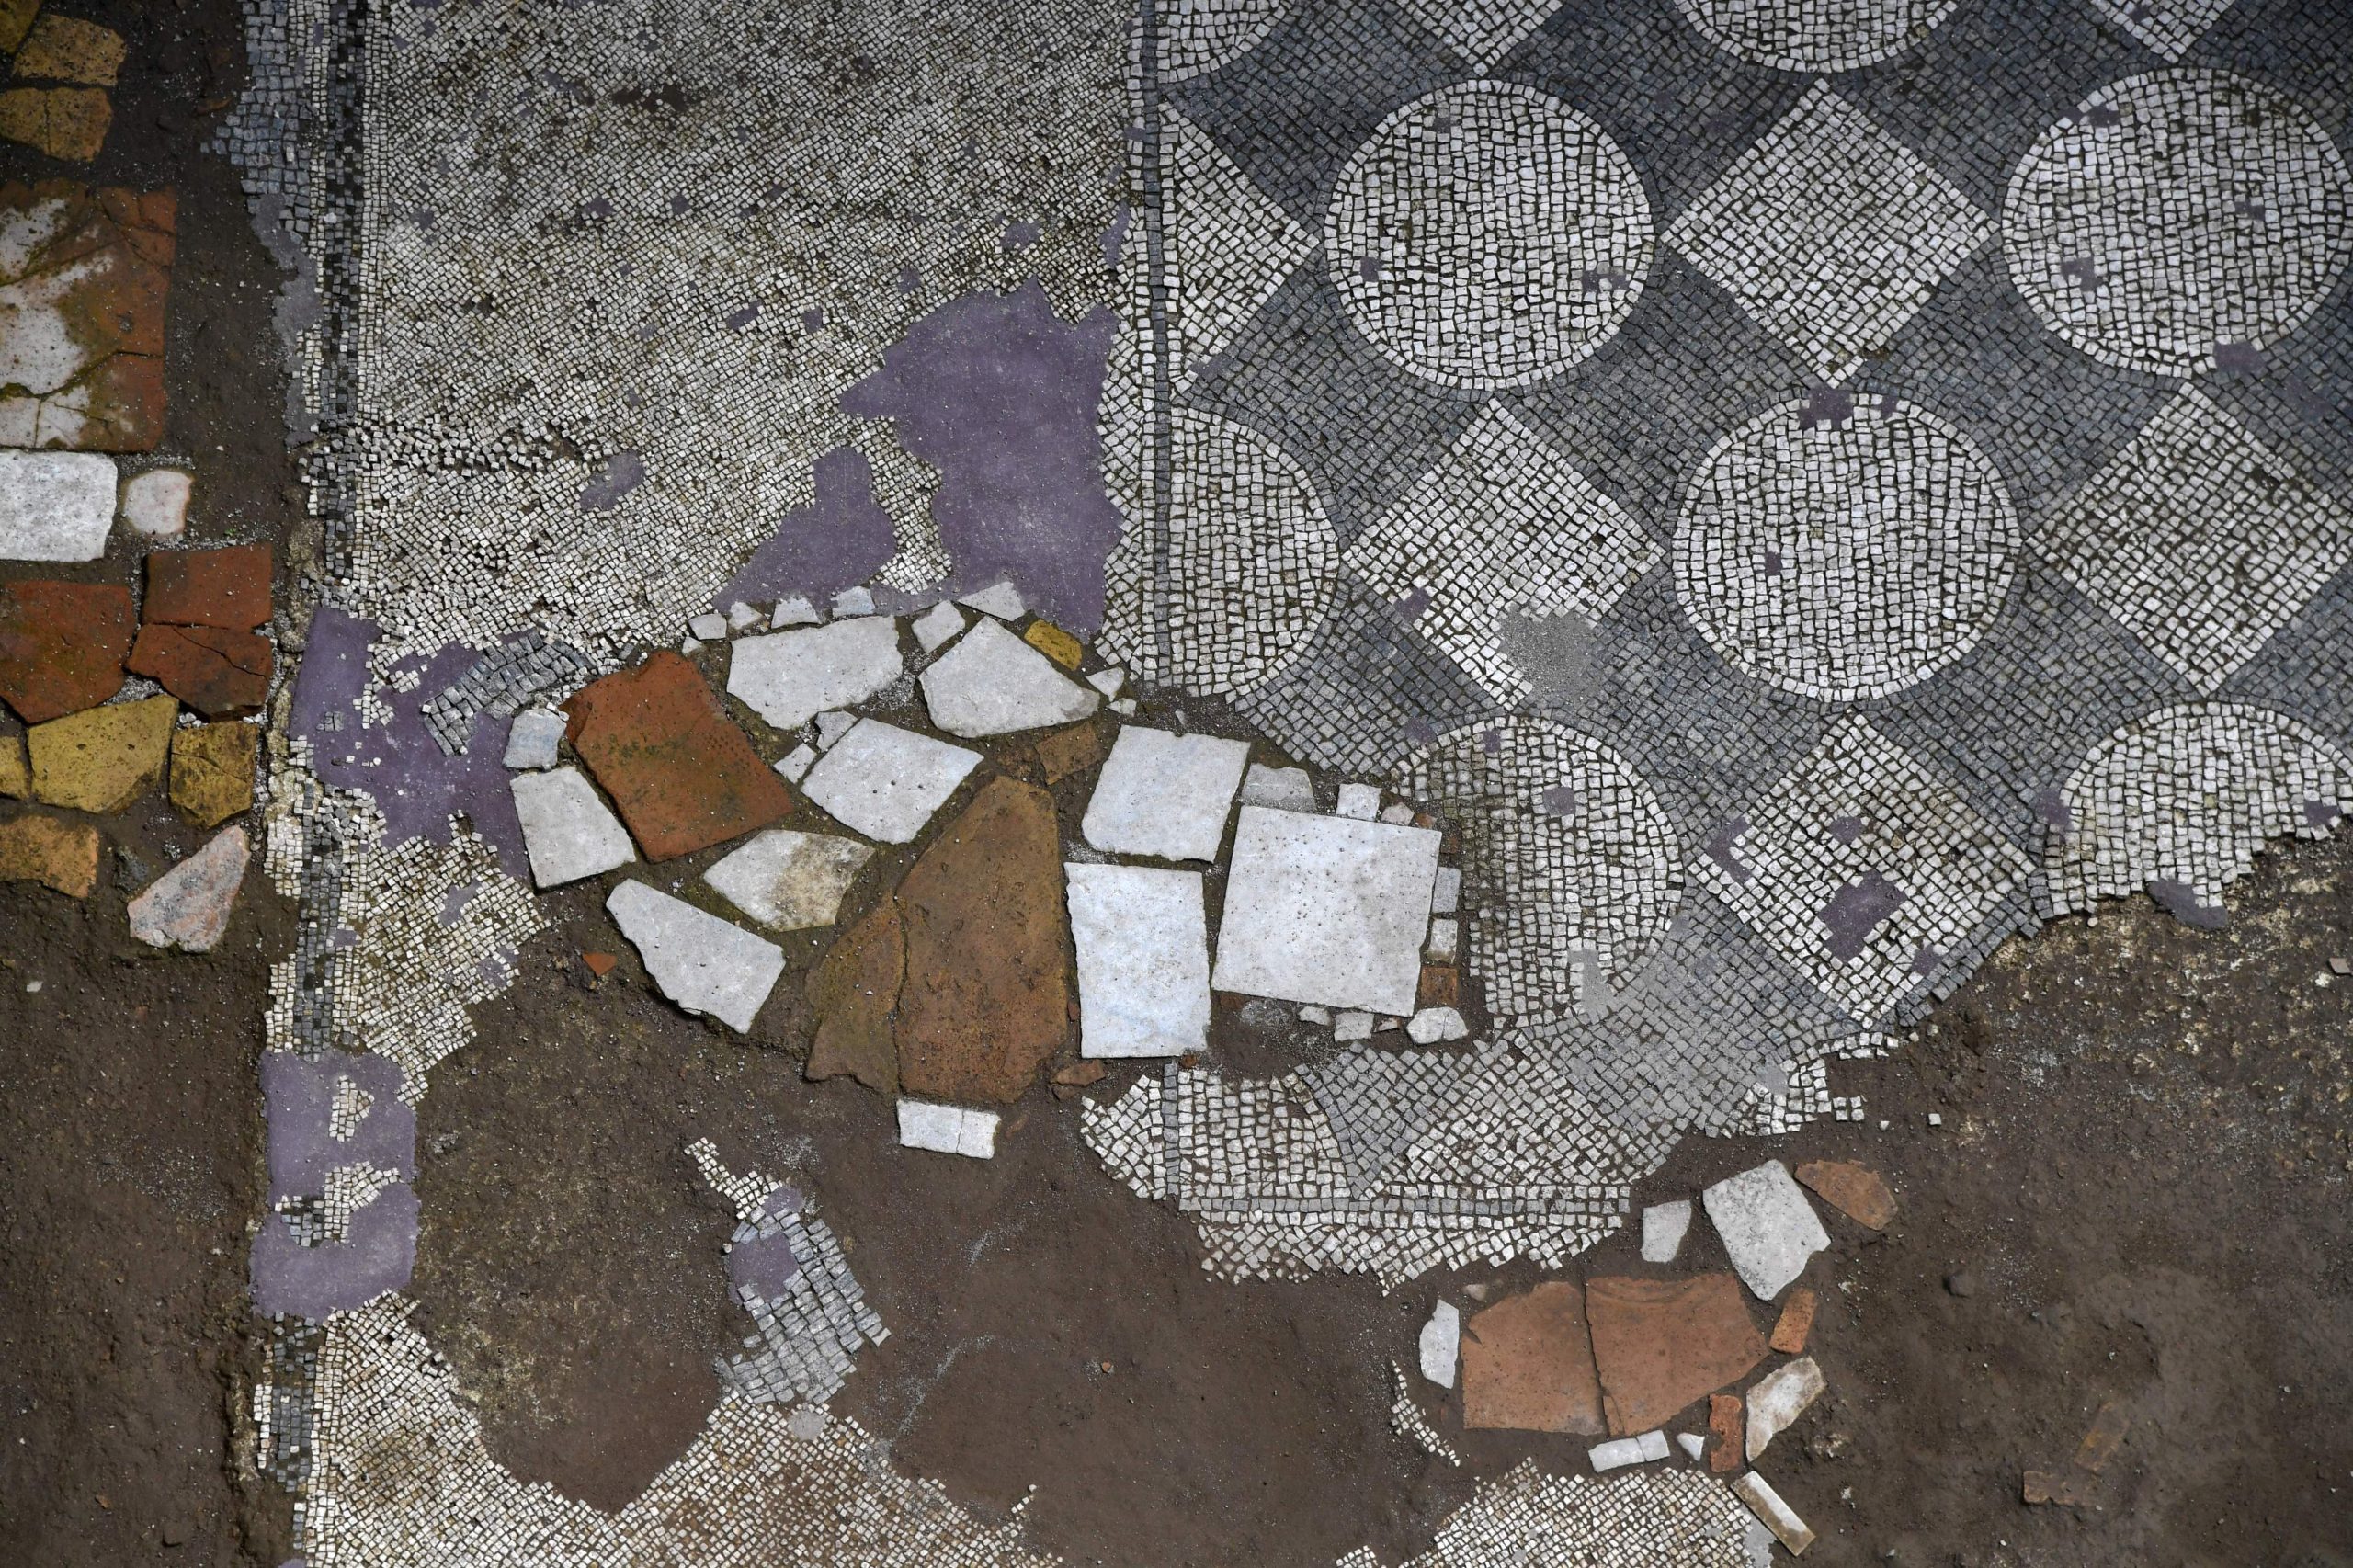 Se descubrieron mosaicos antiguos durante la excavación de un sitio de estación de metro